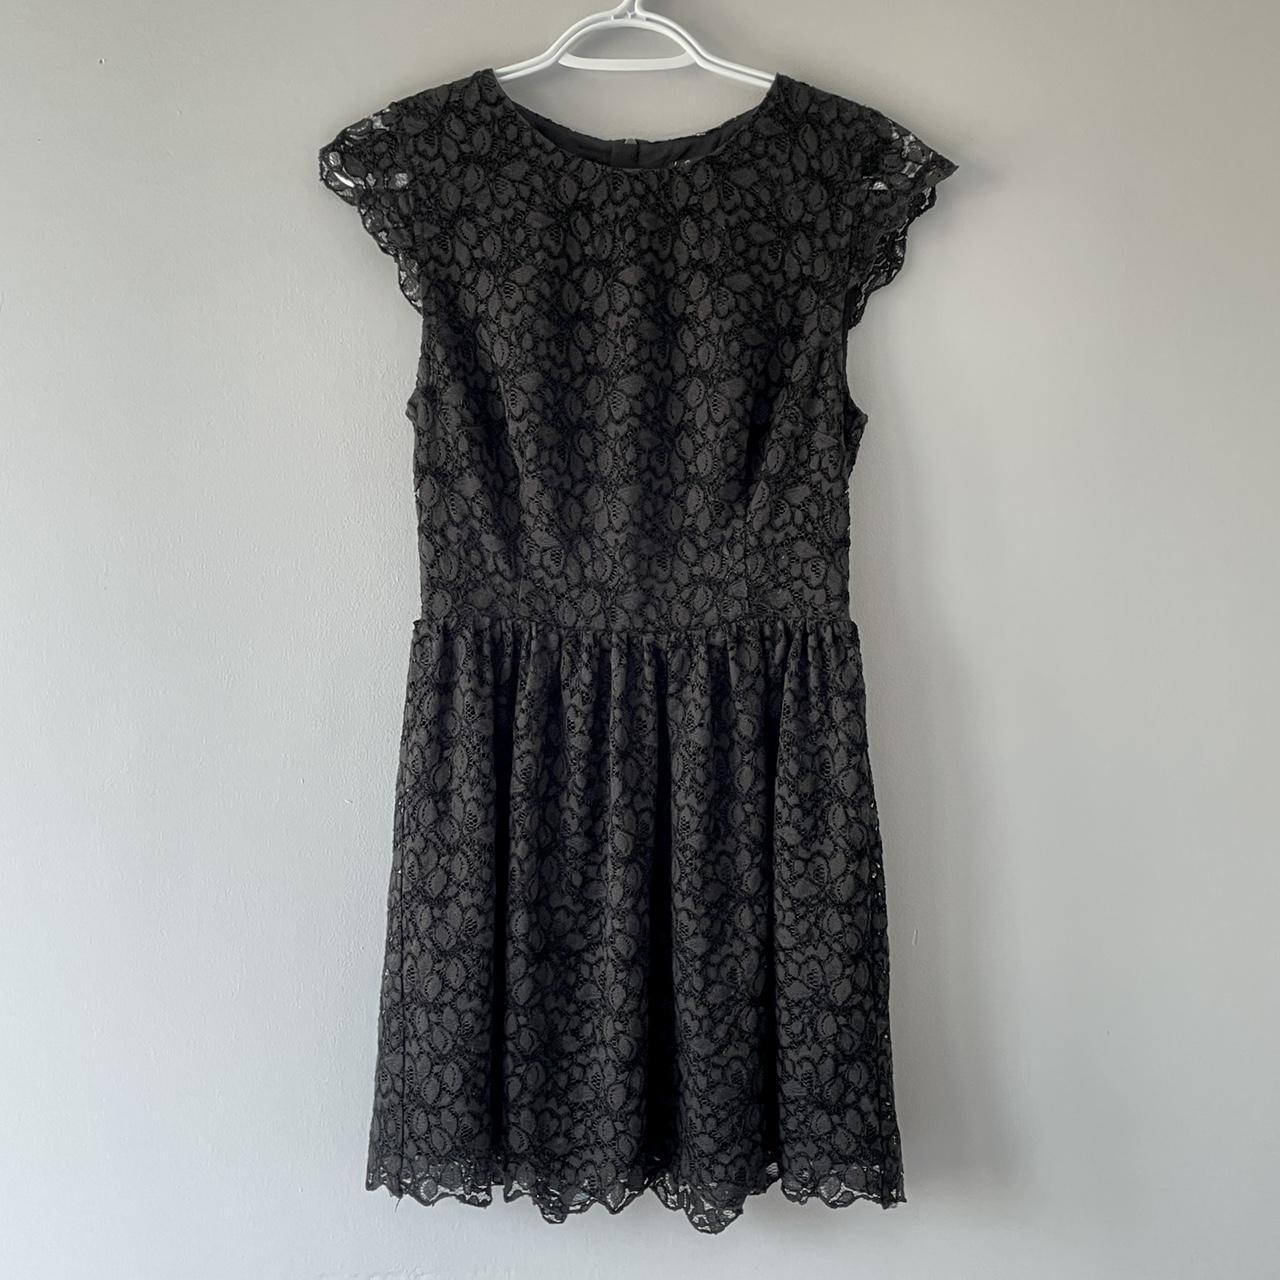 Aritzia Talula black lace dress. Double lined. In... - Depop